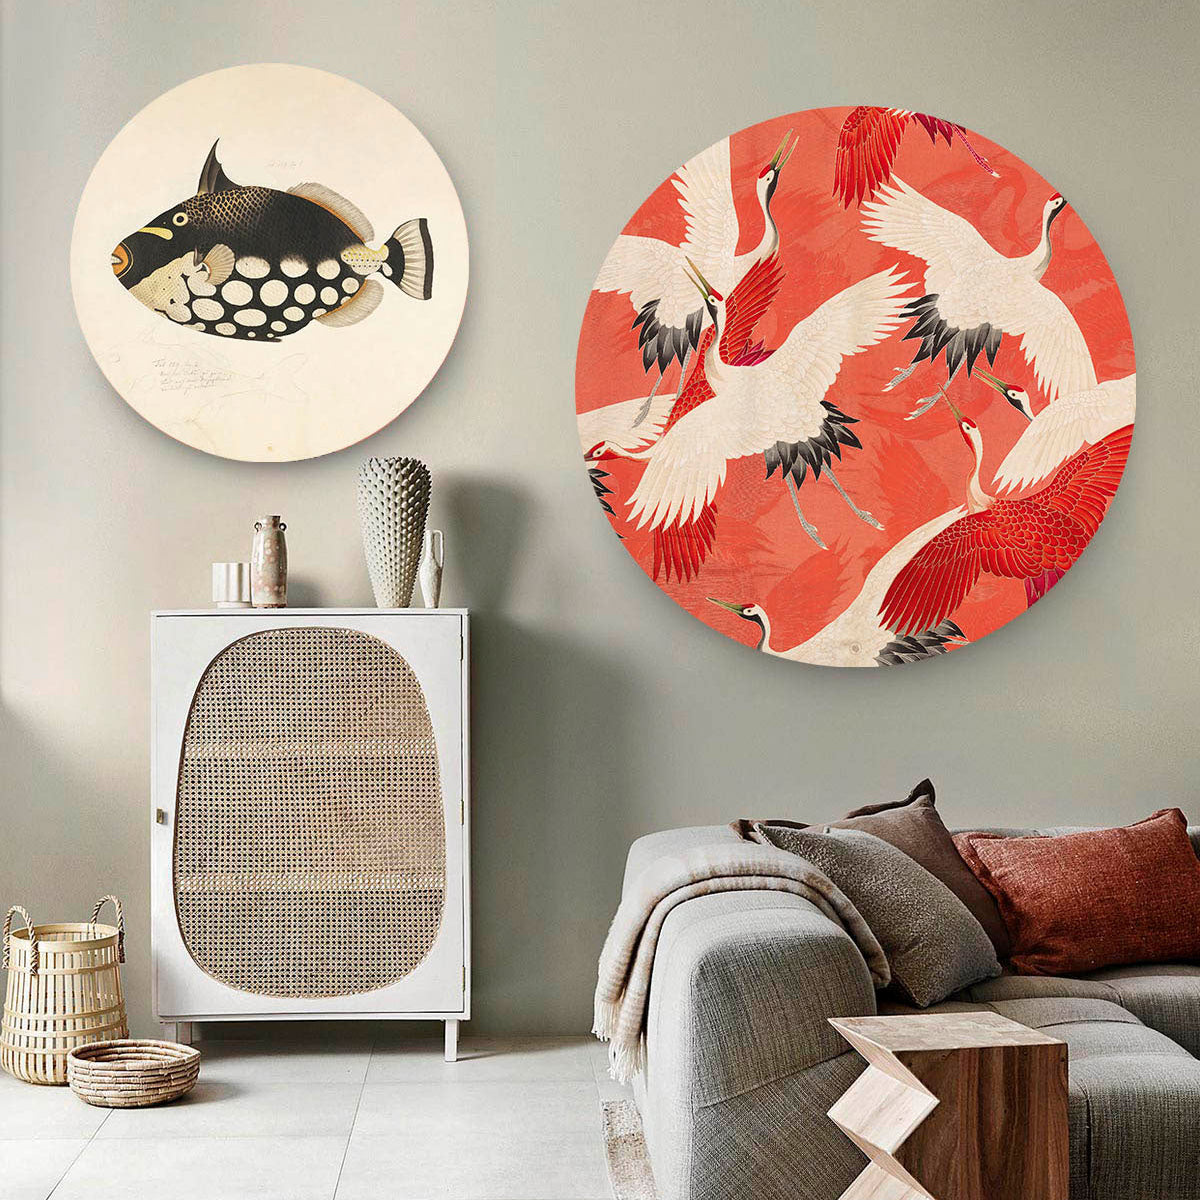 Woonkamer met twee wandcirkels met kraanvogels en moderne kunst op afgebeeld.